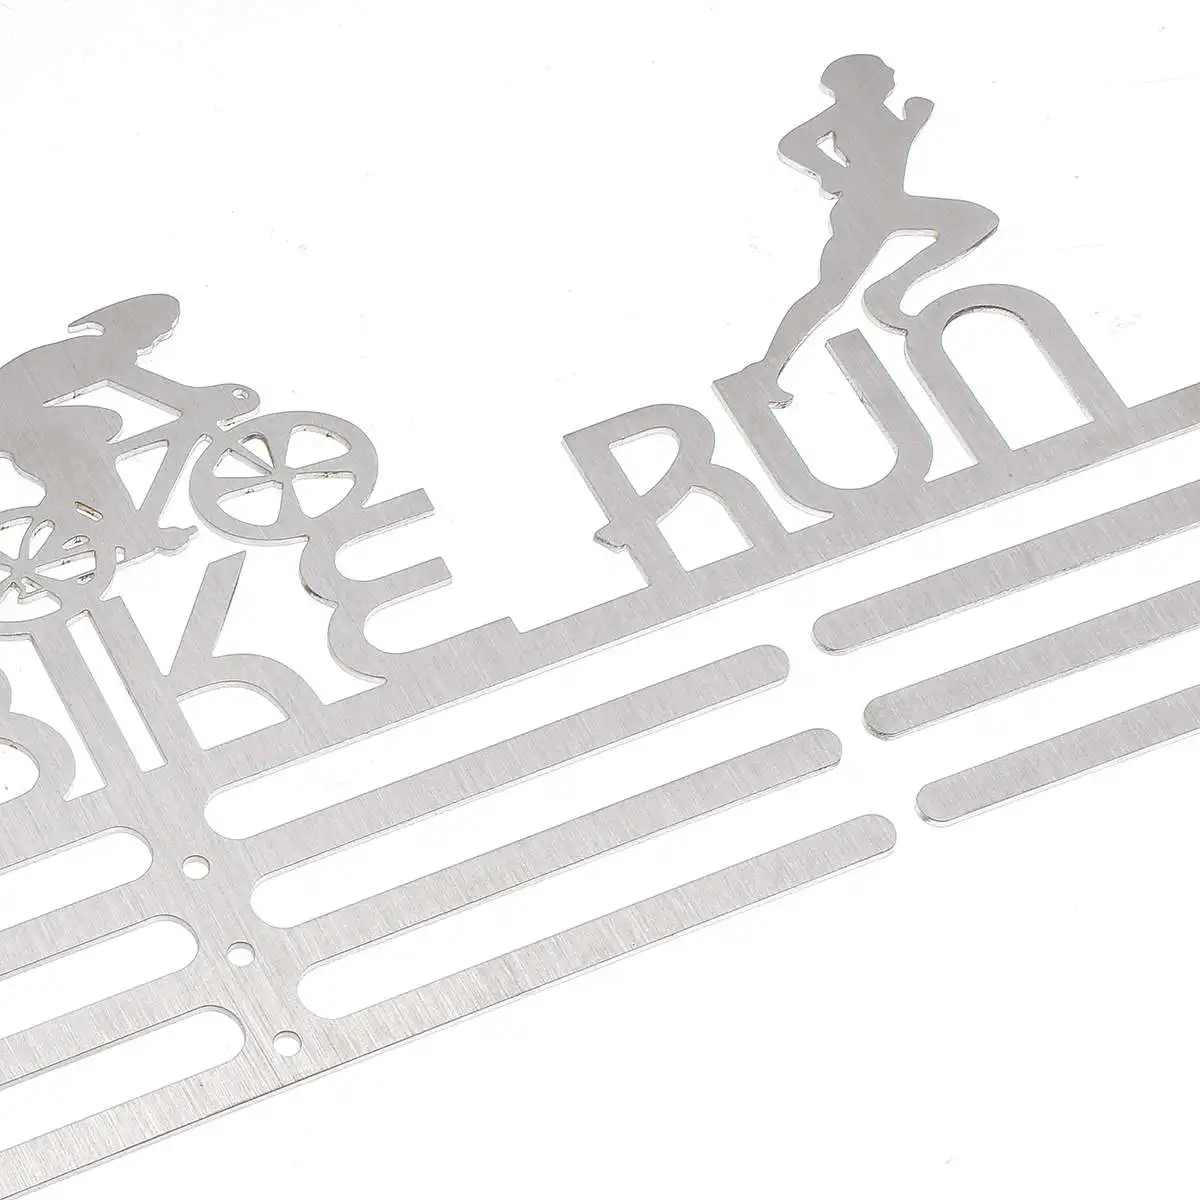 Металлические медали Подставка-дисплей стойка для марафона бега плавания велосипеда соревнования 60/36 медаль Спорт медаль дисплей стойка из нержавеющей стали